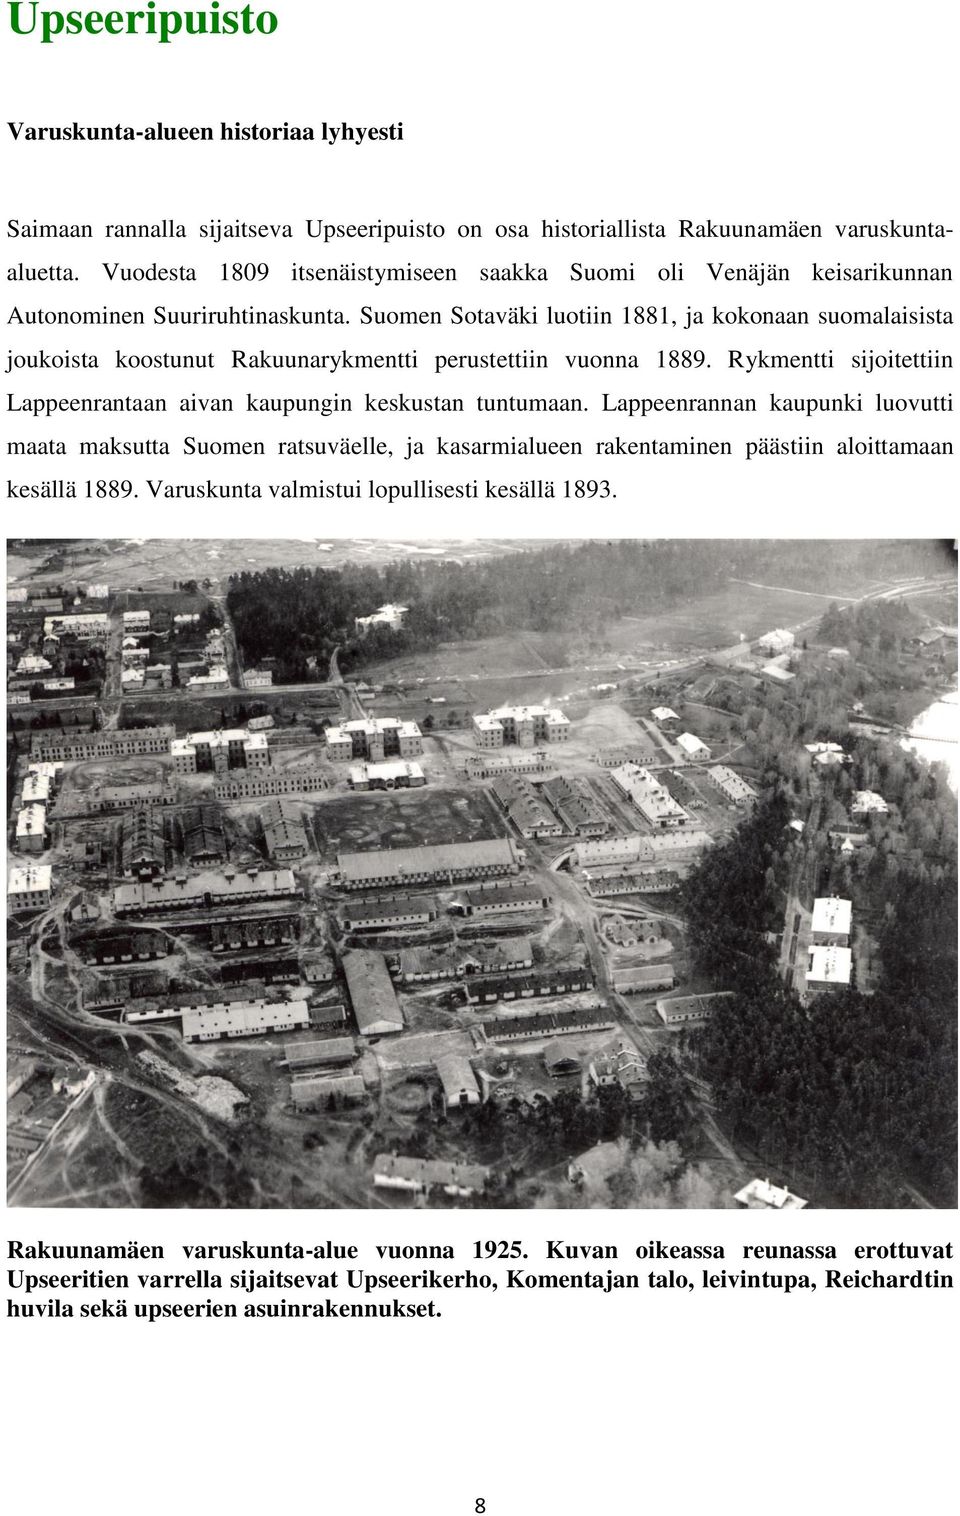 Suomen Sotaväki luotiin 1881, ja kokonaan suomalaisista joukoista koostunut Rakuunarykmentti perustettiin vuonna 1889. Rykmentti sijoitettiin Lappeenrantaan aivan kaupungin keskustan tuntumaan.